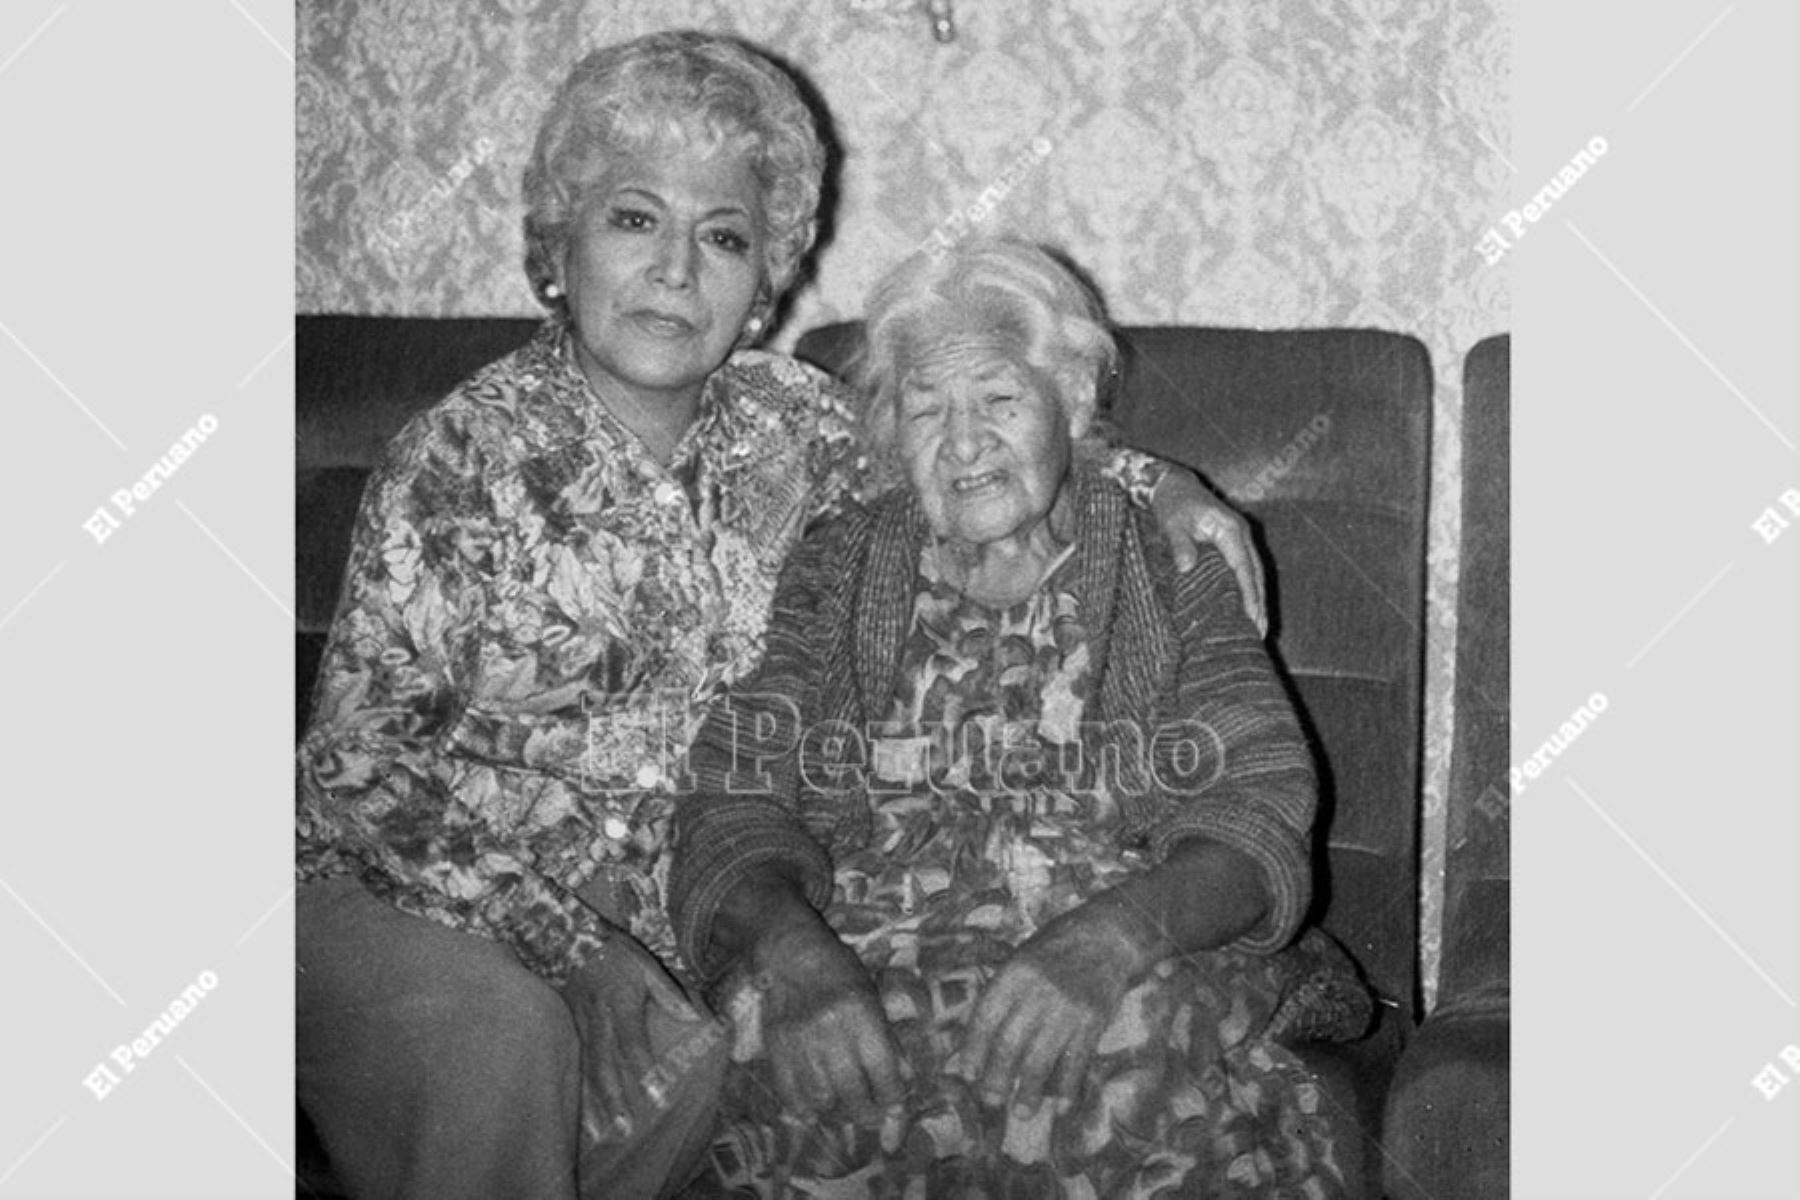 Lima - 9 mayo 1979 / La cantante Jesús Vásquez posa junto a su mamá para un especial por el Día de la Madre. Foto: Archivo Histórico de El Peruano / Leoncio Mariscal.
Foto: ANDINA/ Archivo